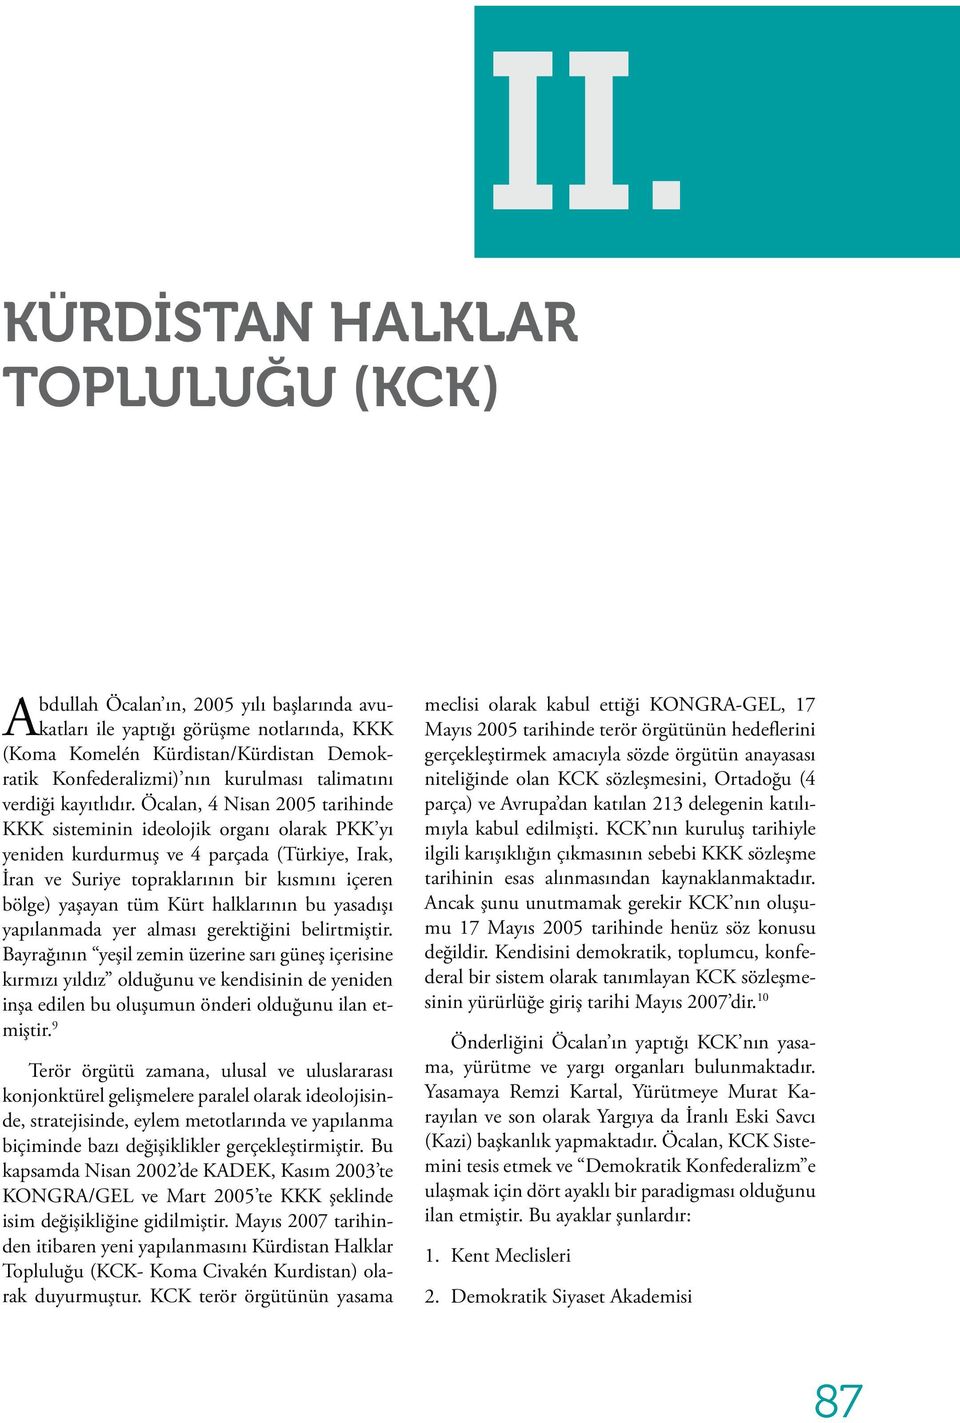 Öcalan, 4 Nisan 2005 tarihinde KKK sisteminin ideolojik organı olarak PKK yı yeniden kurdurmuş ve 4 parçada (Türkiye, Irak, İran ve Suriye topraklarının bir kısmını içeren bölge) yaşayan tüm Kürt